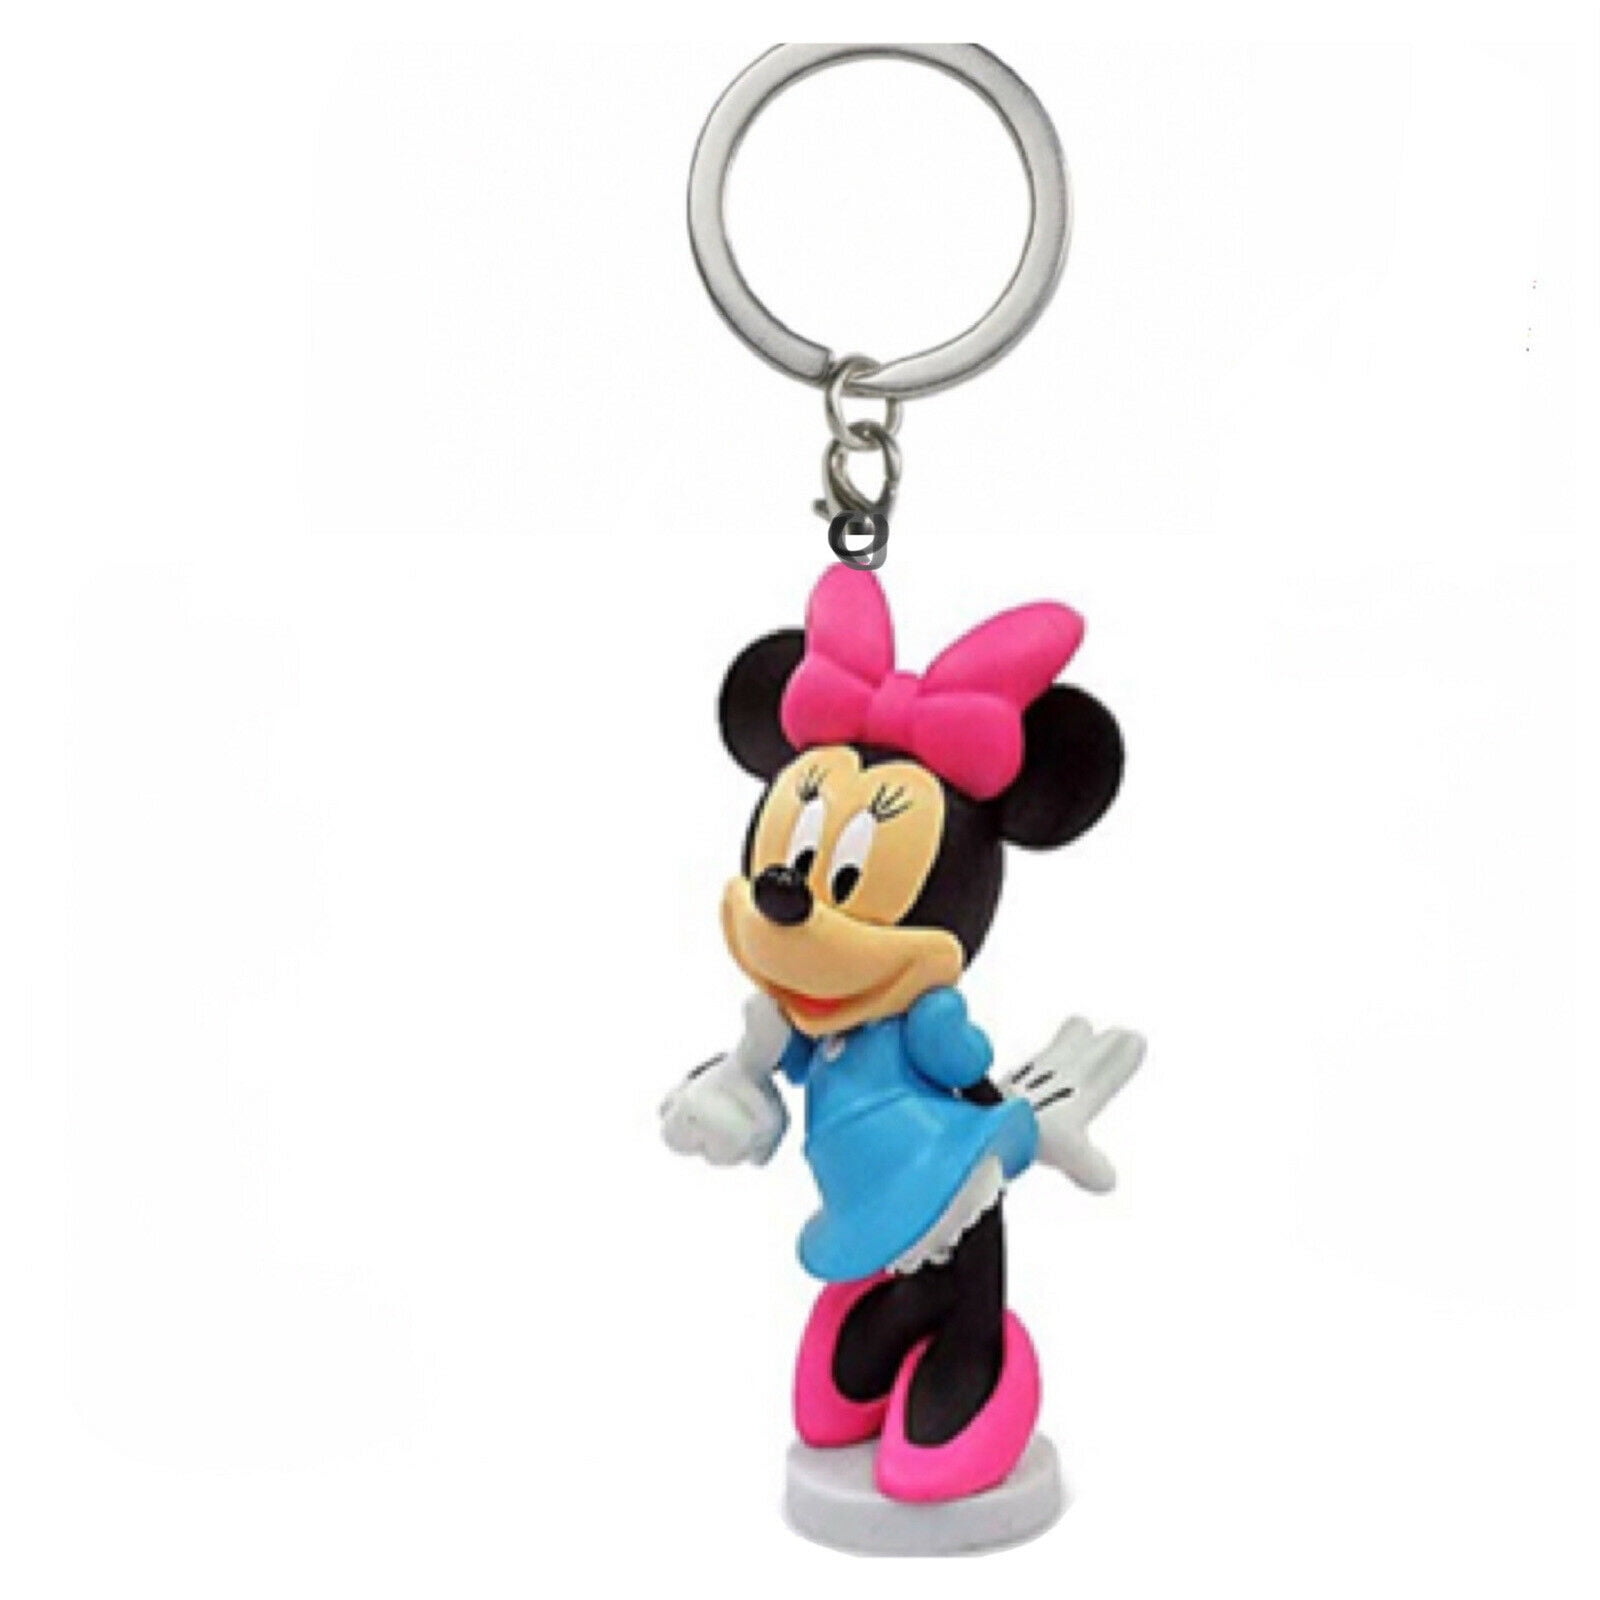 New Disney 3 Charm Minnie Mouse Keychain